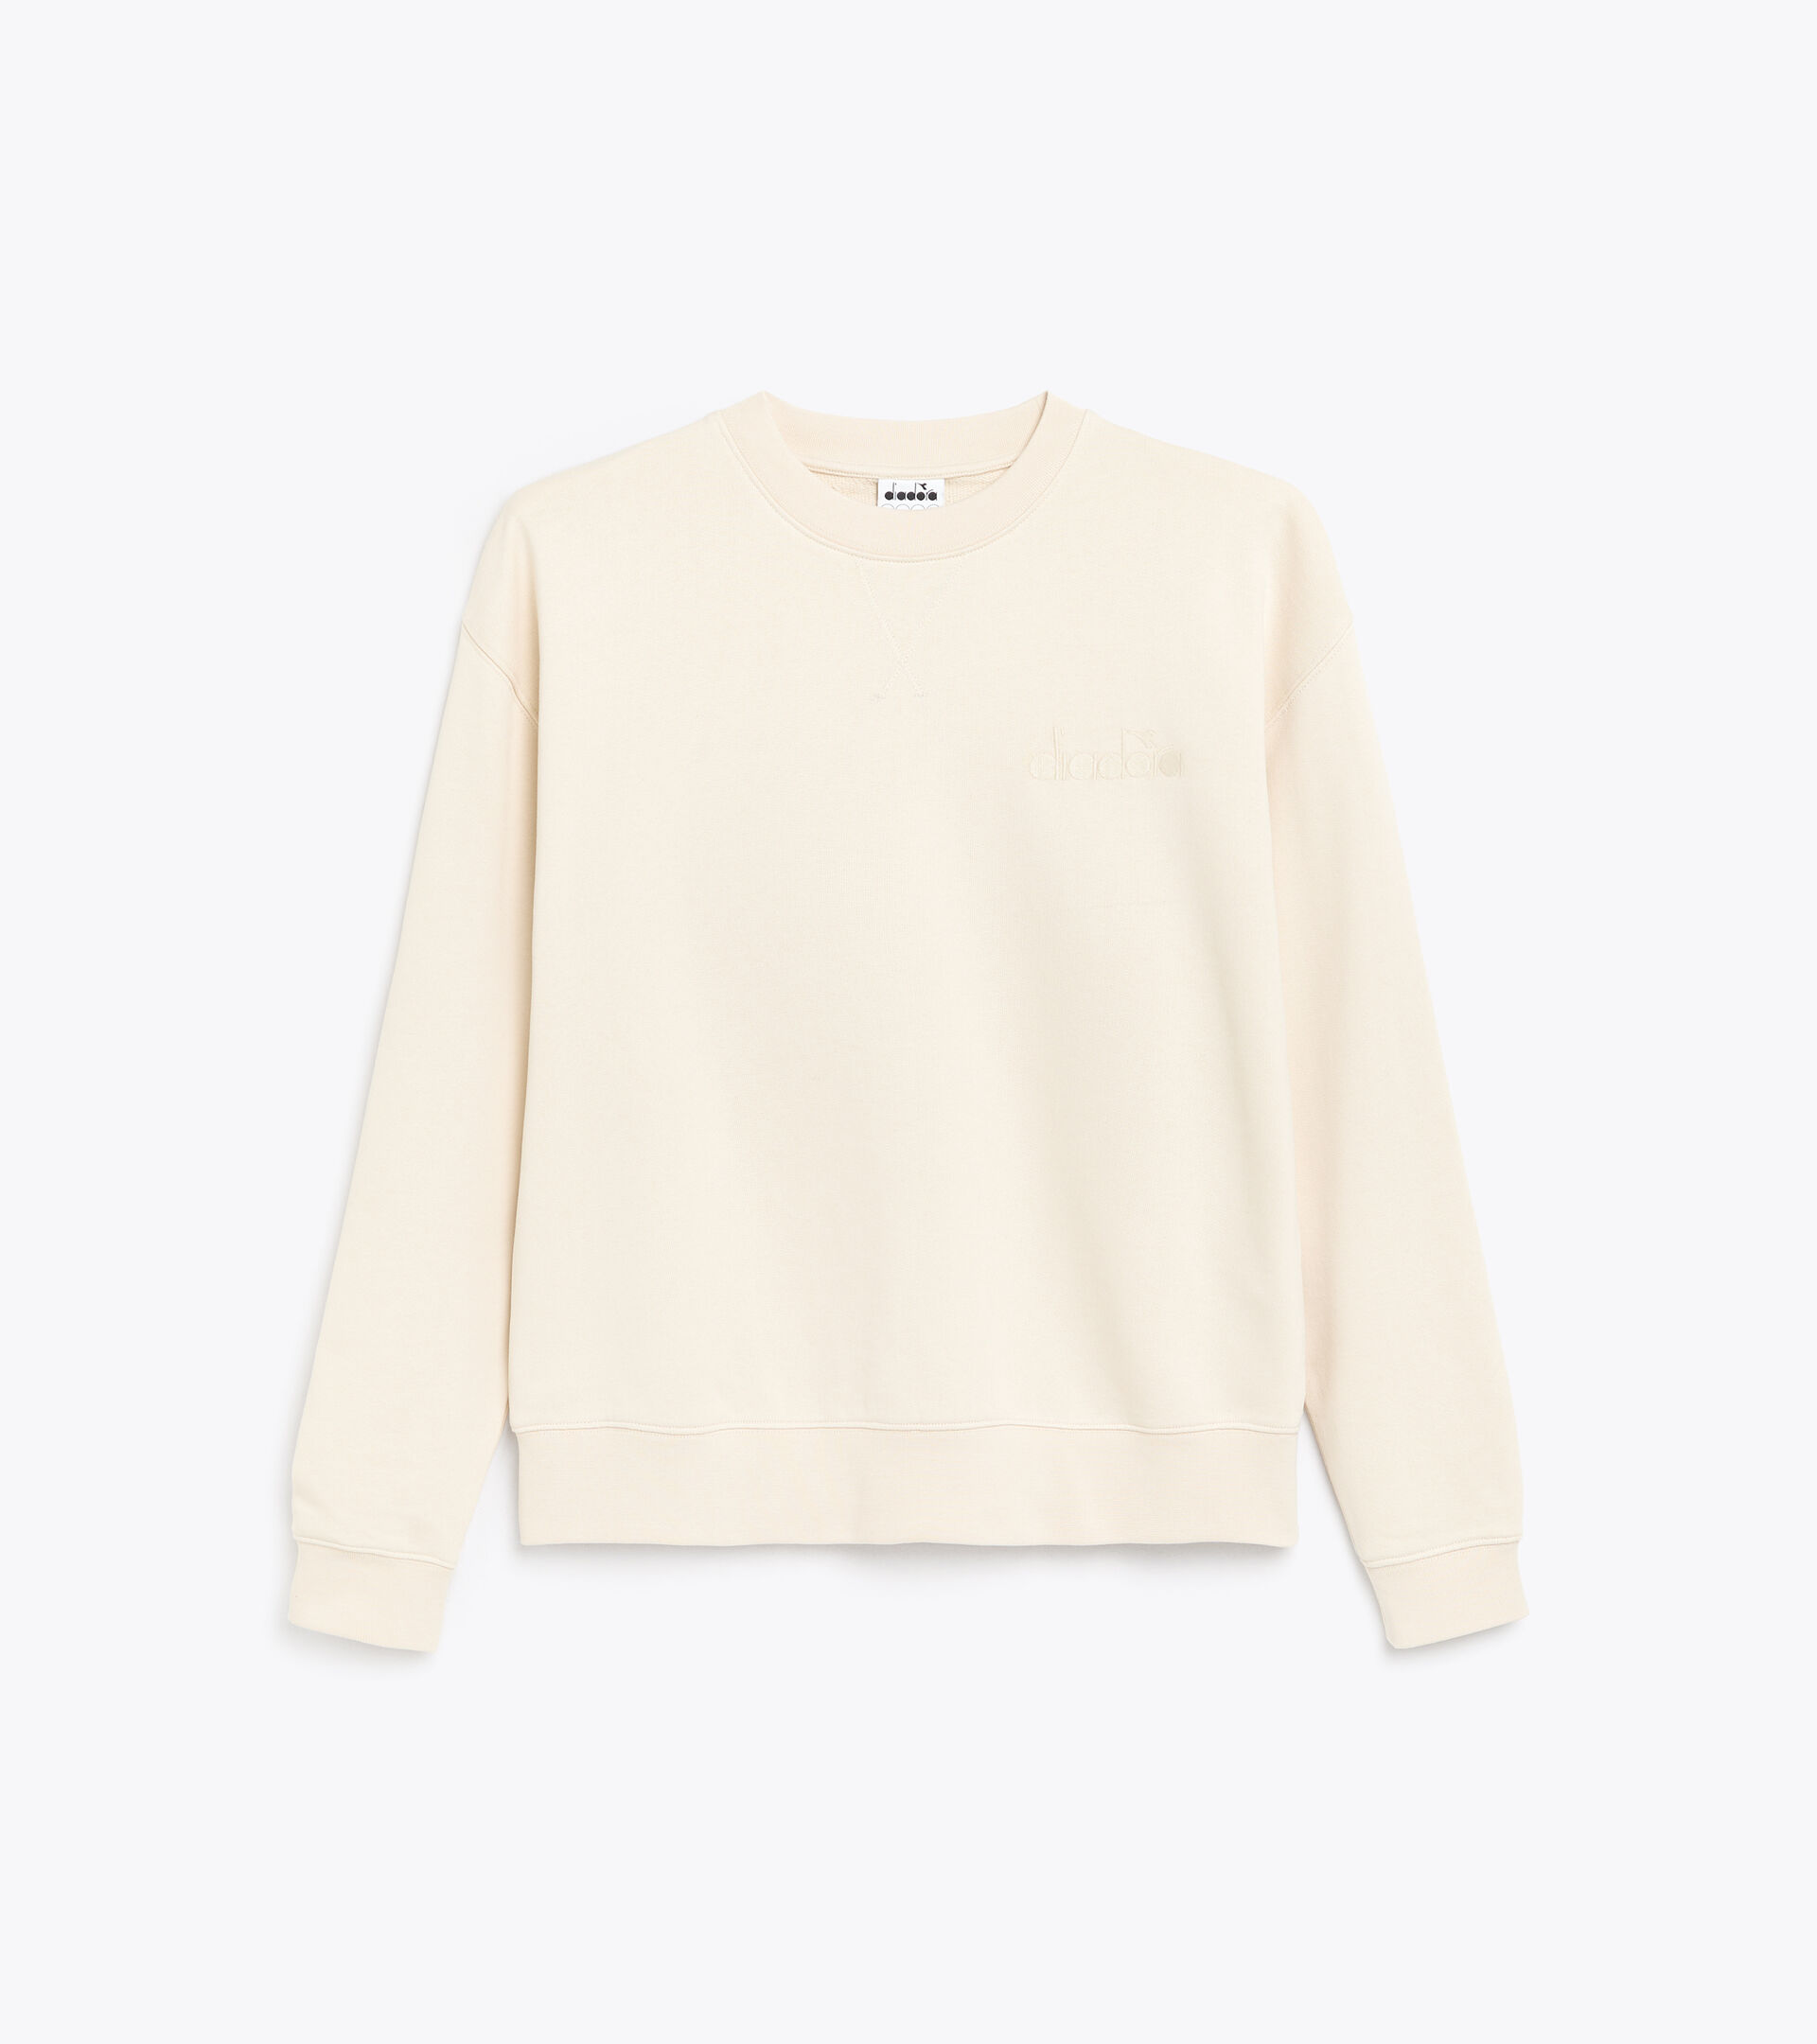 Cotton sweatshirt - Gender neutral SWEATSHIRT CREW SPW LOGO WHITE SWAN - Diadora